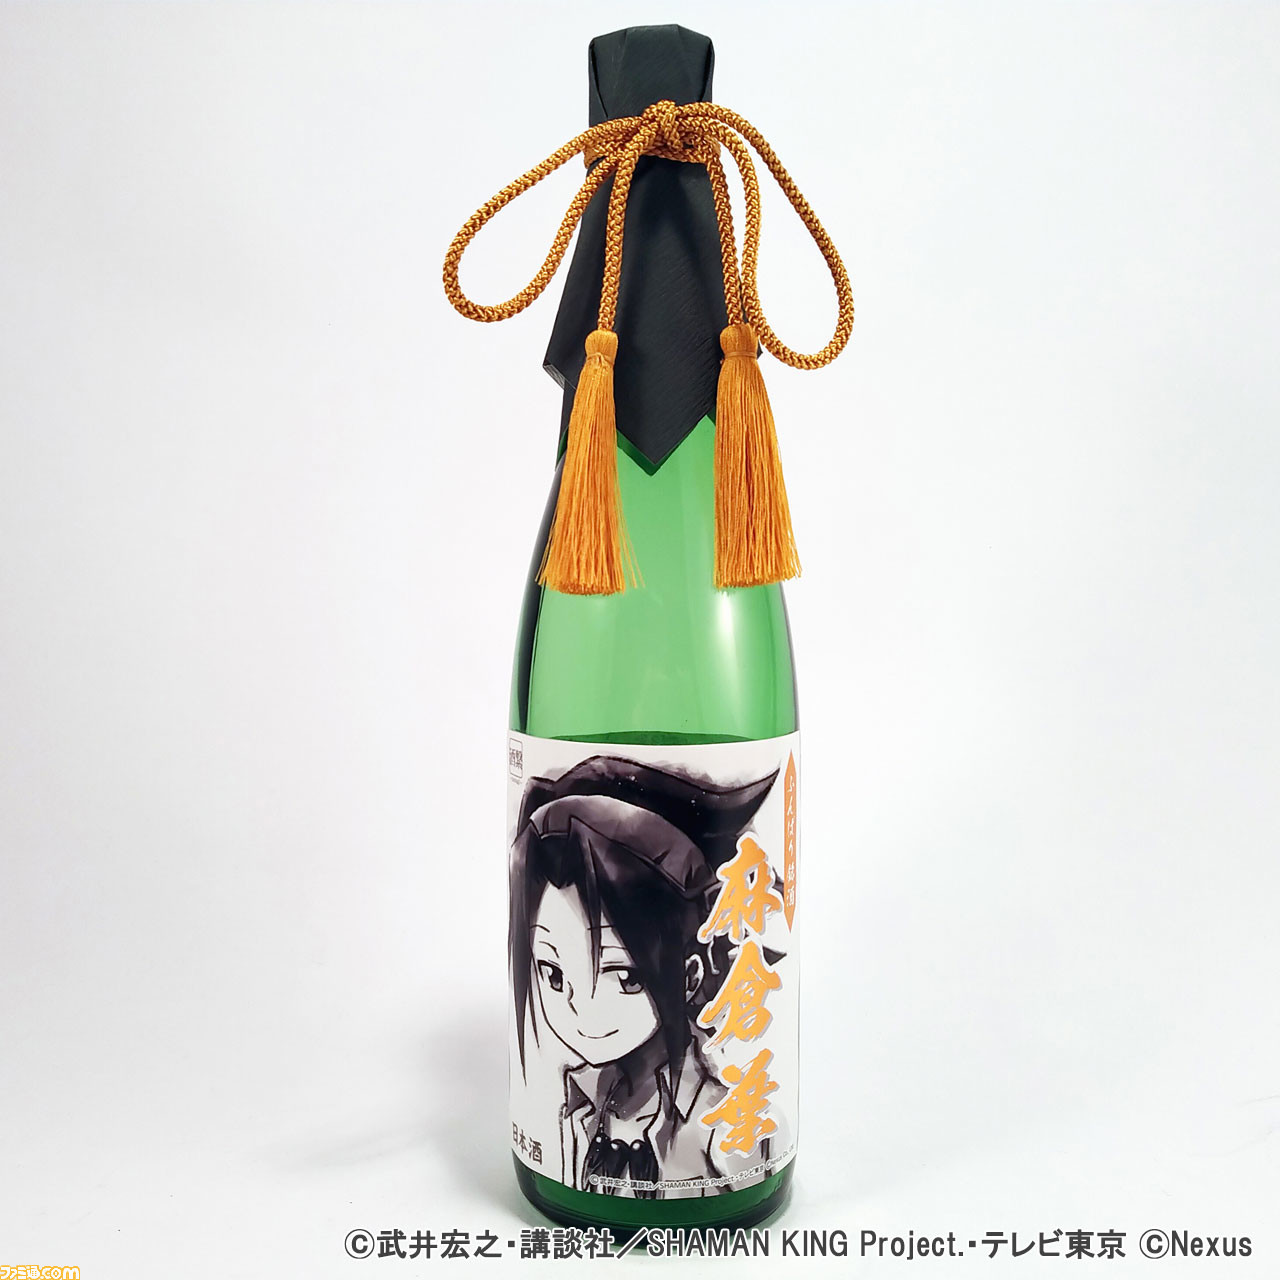 アニメ シャーマンキング のコラボ日本酒が予約開始 ラベルには墨絵タッチで描かれた葉とアンナをデザイン ゲーム エンタメ最新情報のファミ通 Com